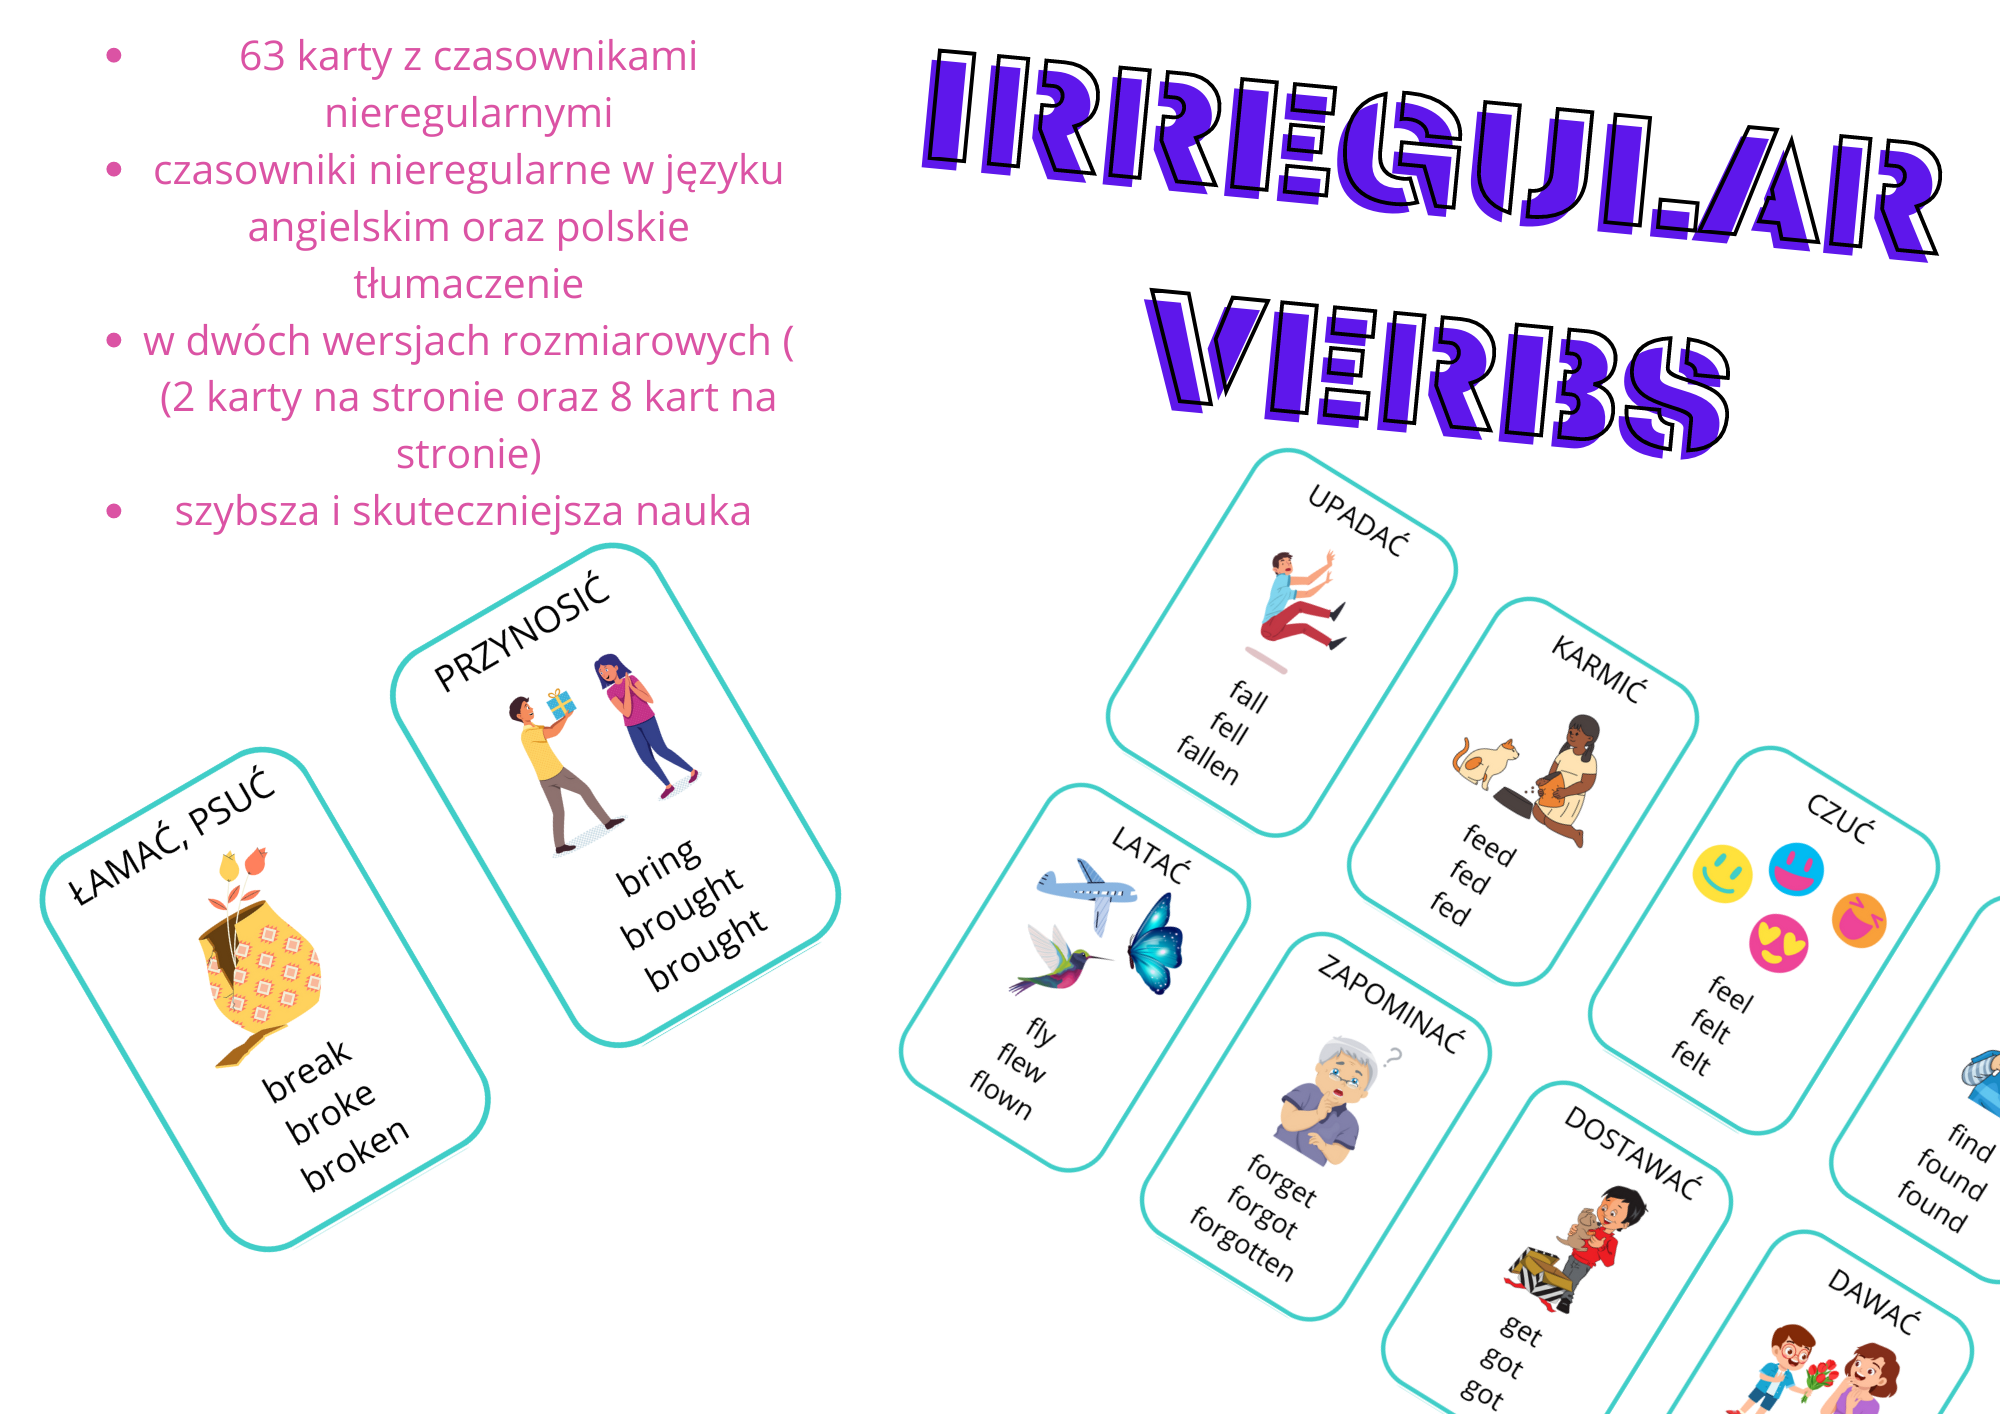 irregular-verbs-angielskie-czasowniki-nieregularne-graficznie-z-oty